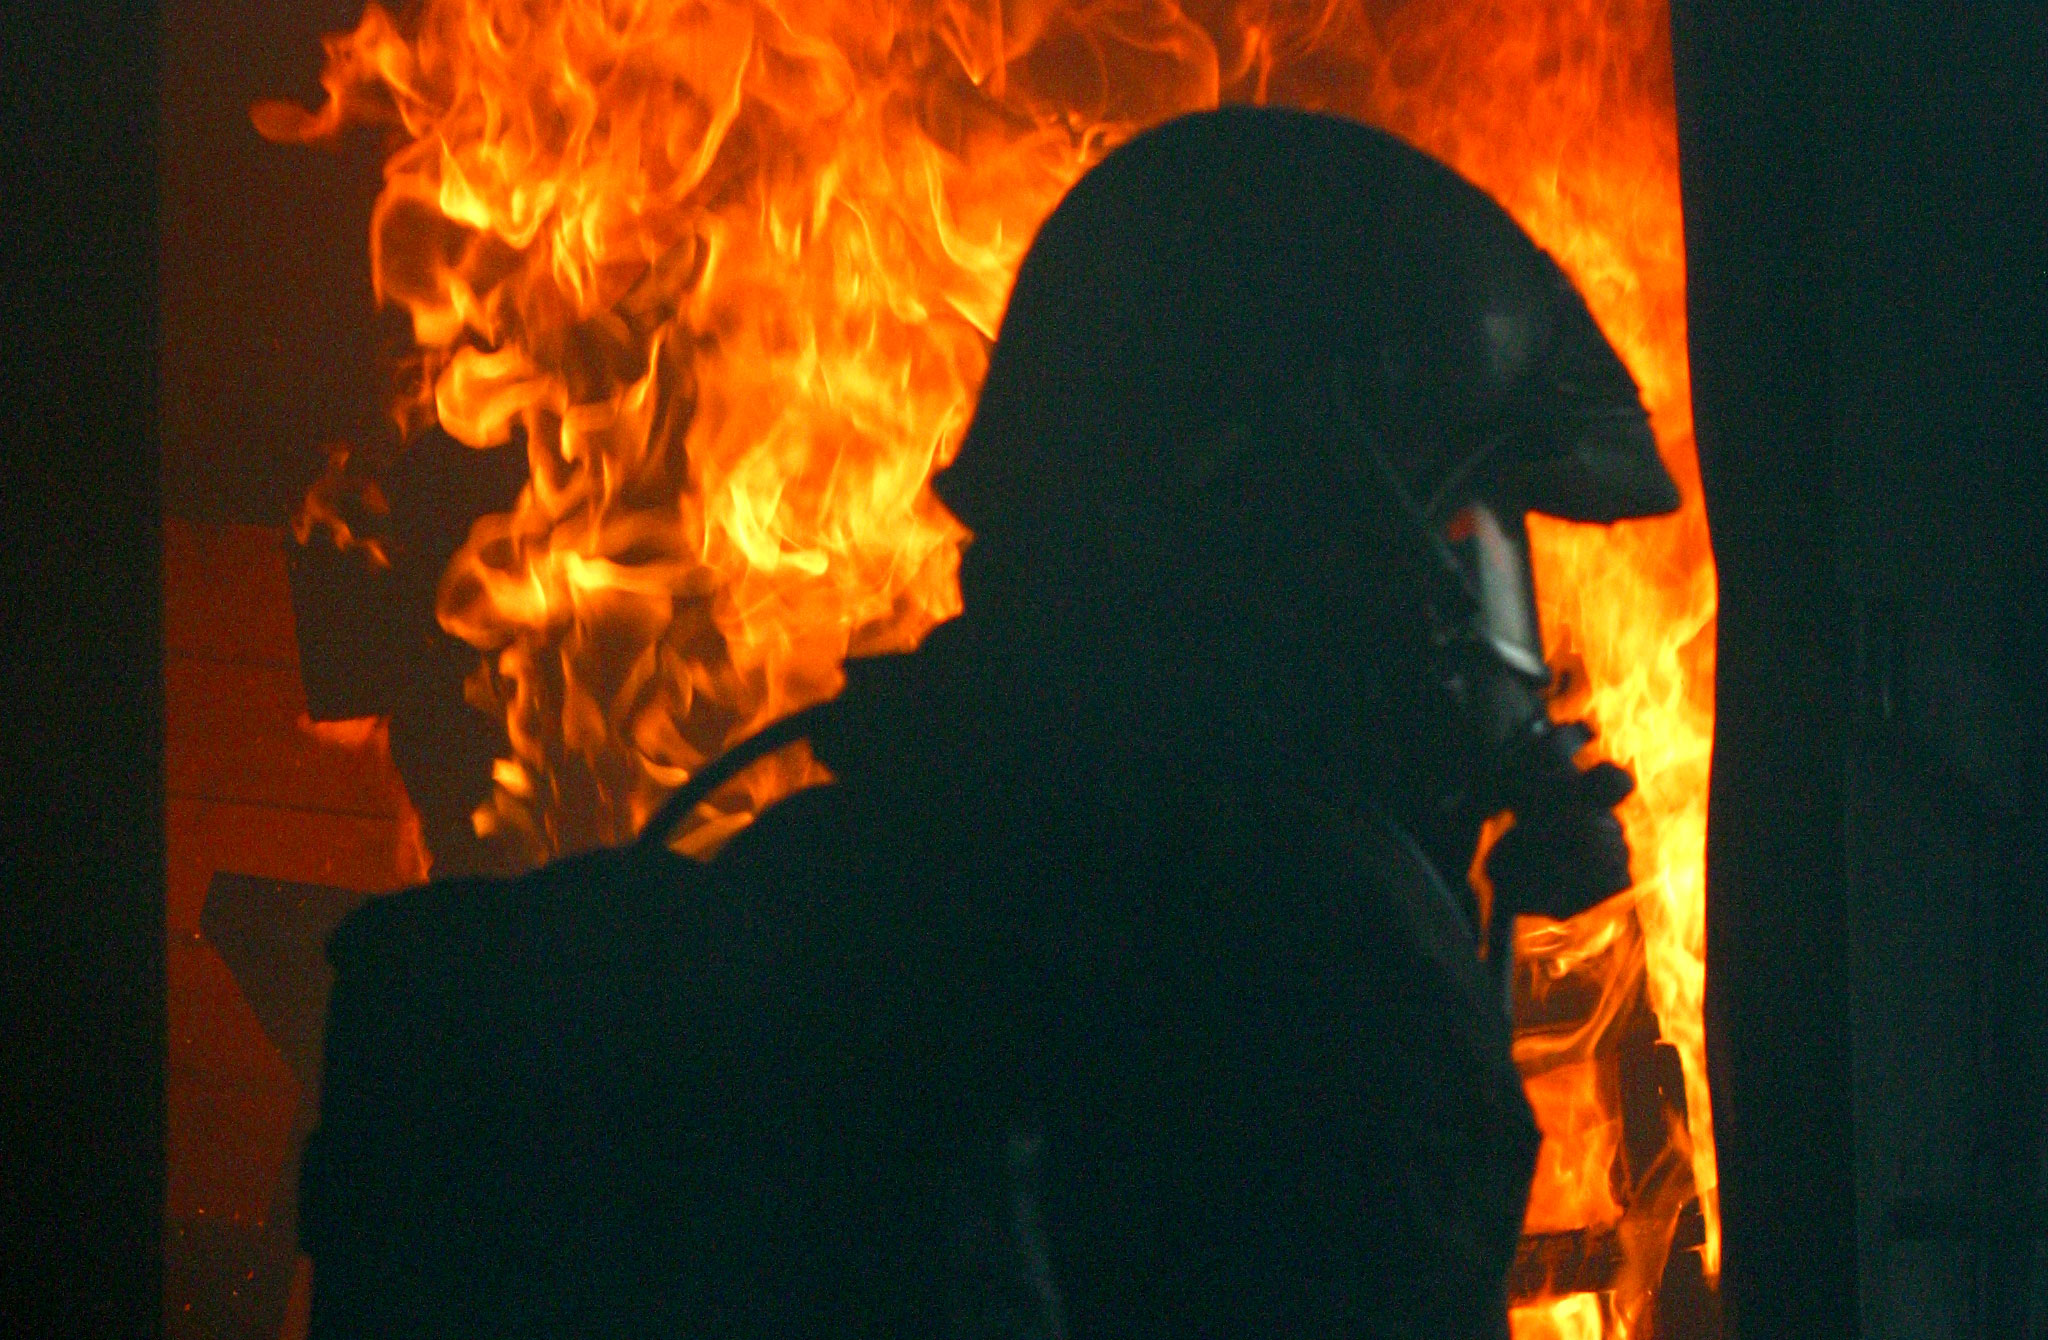 Brandweerman bekend reeks brandstichtingen